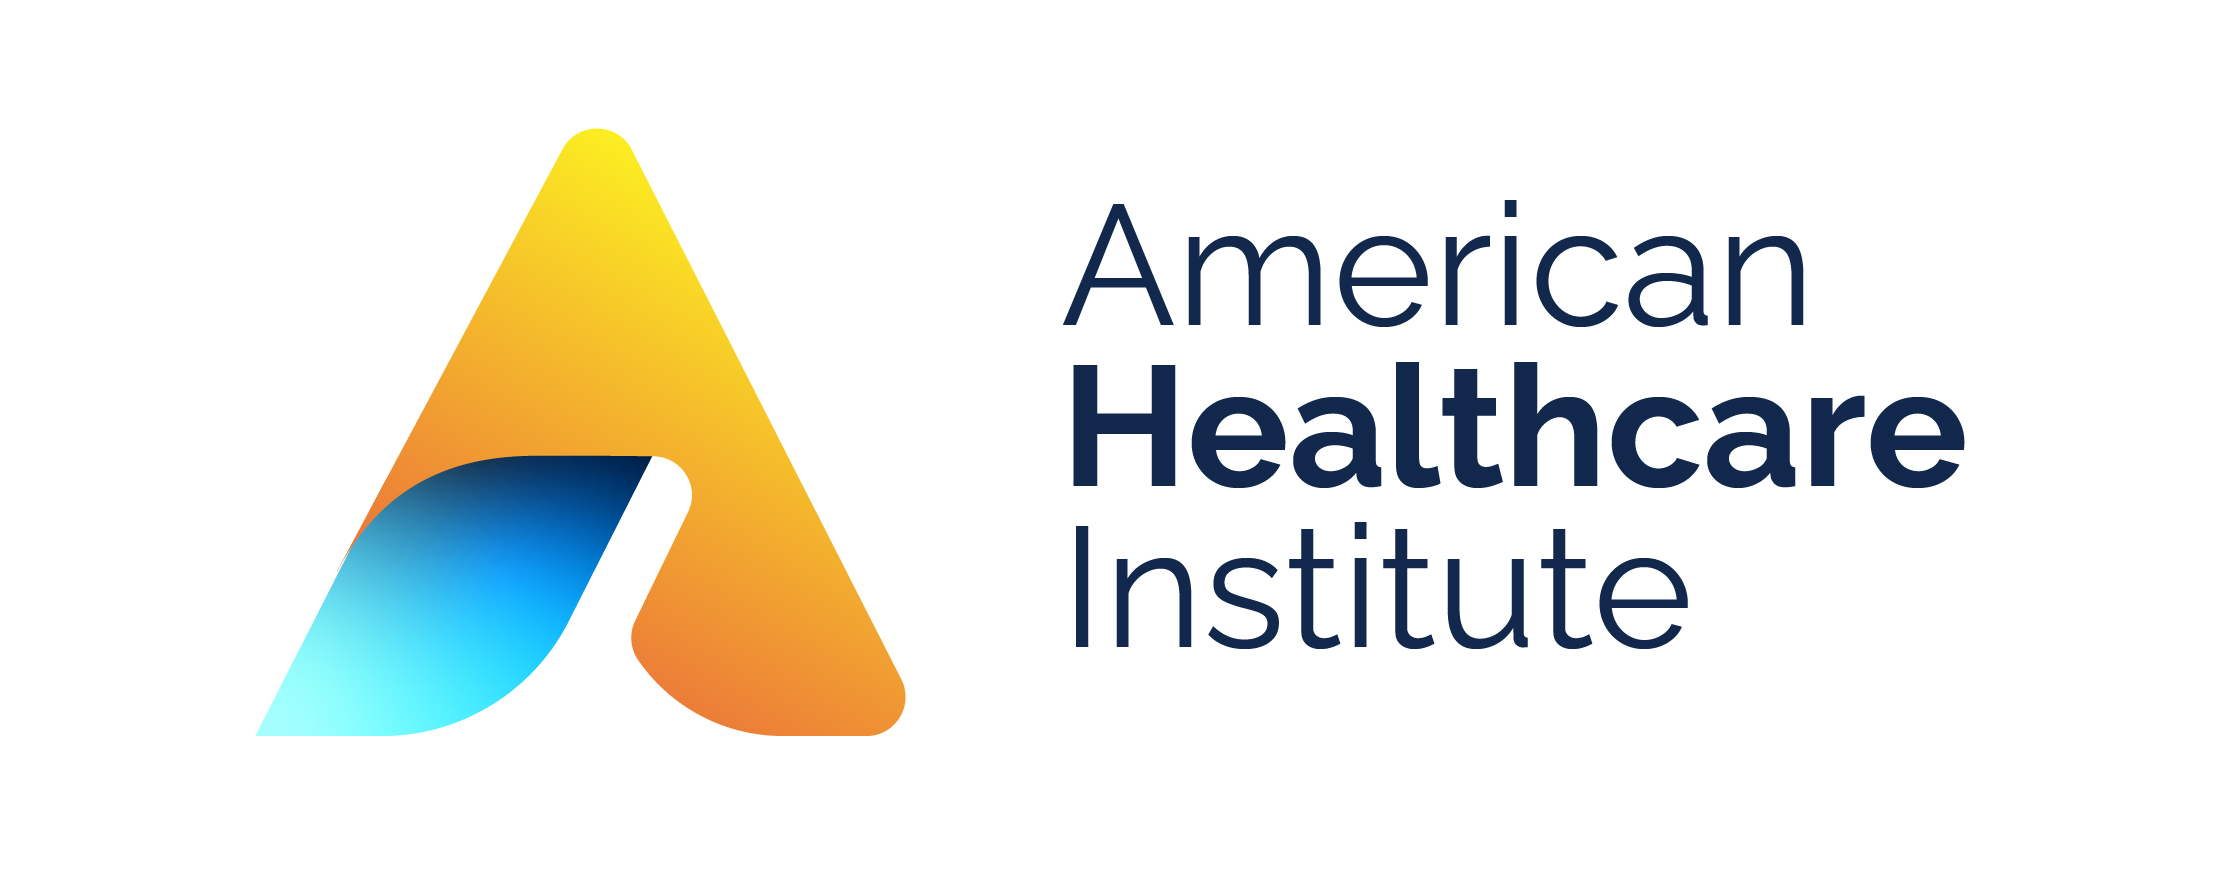 American Healthcare Institute